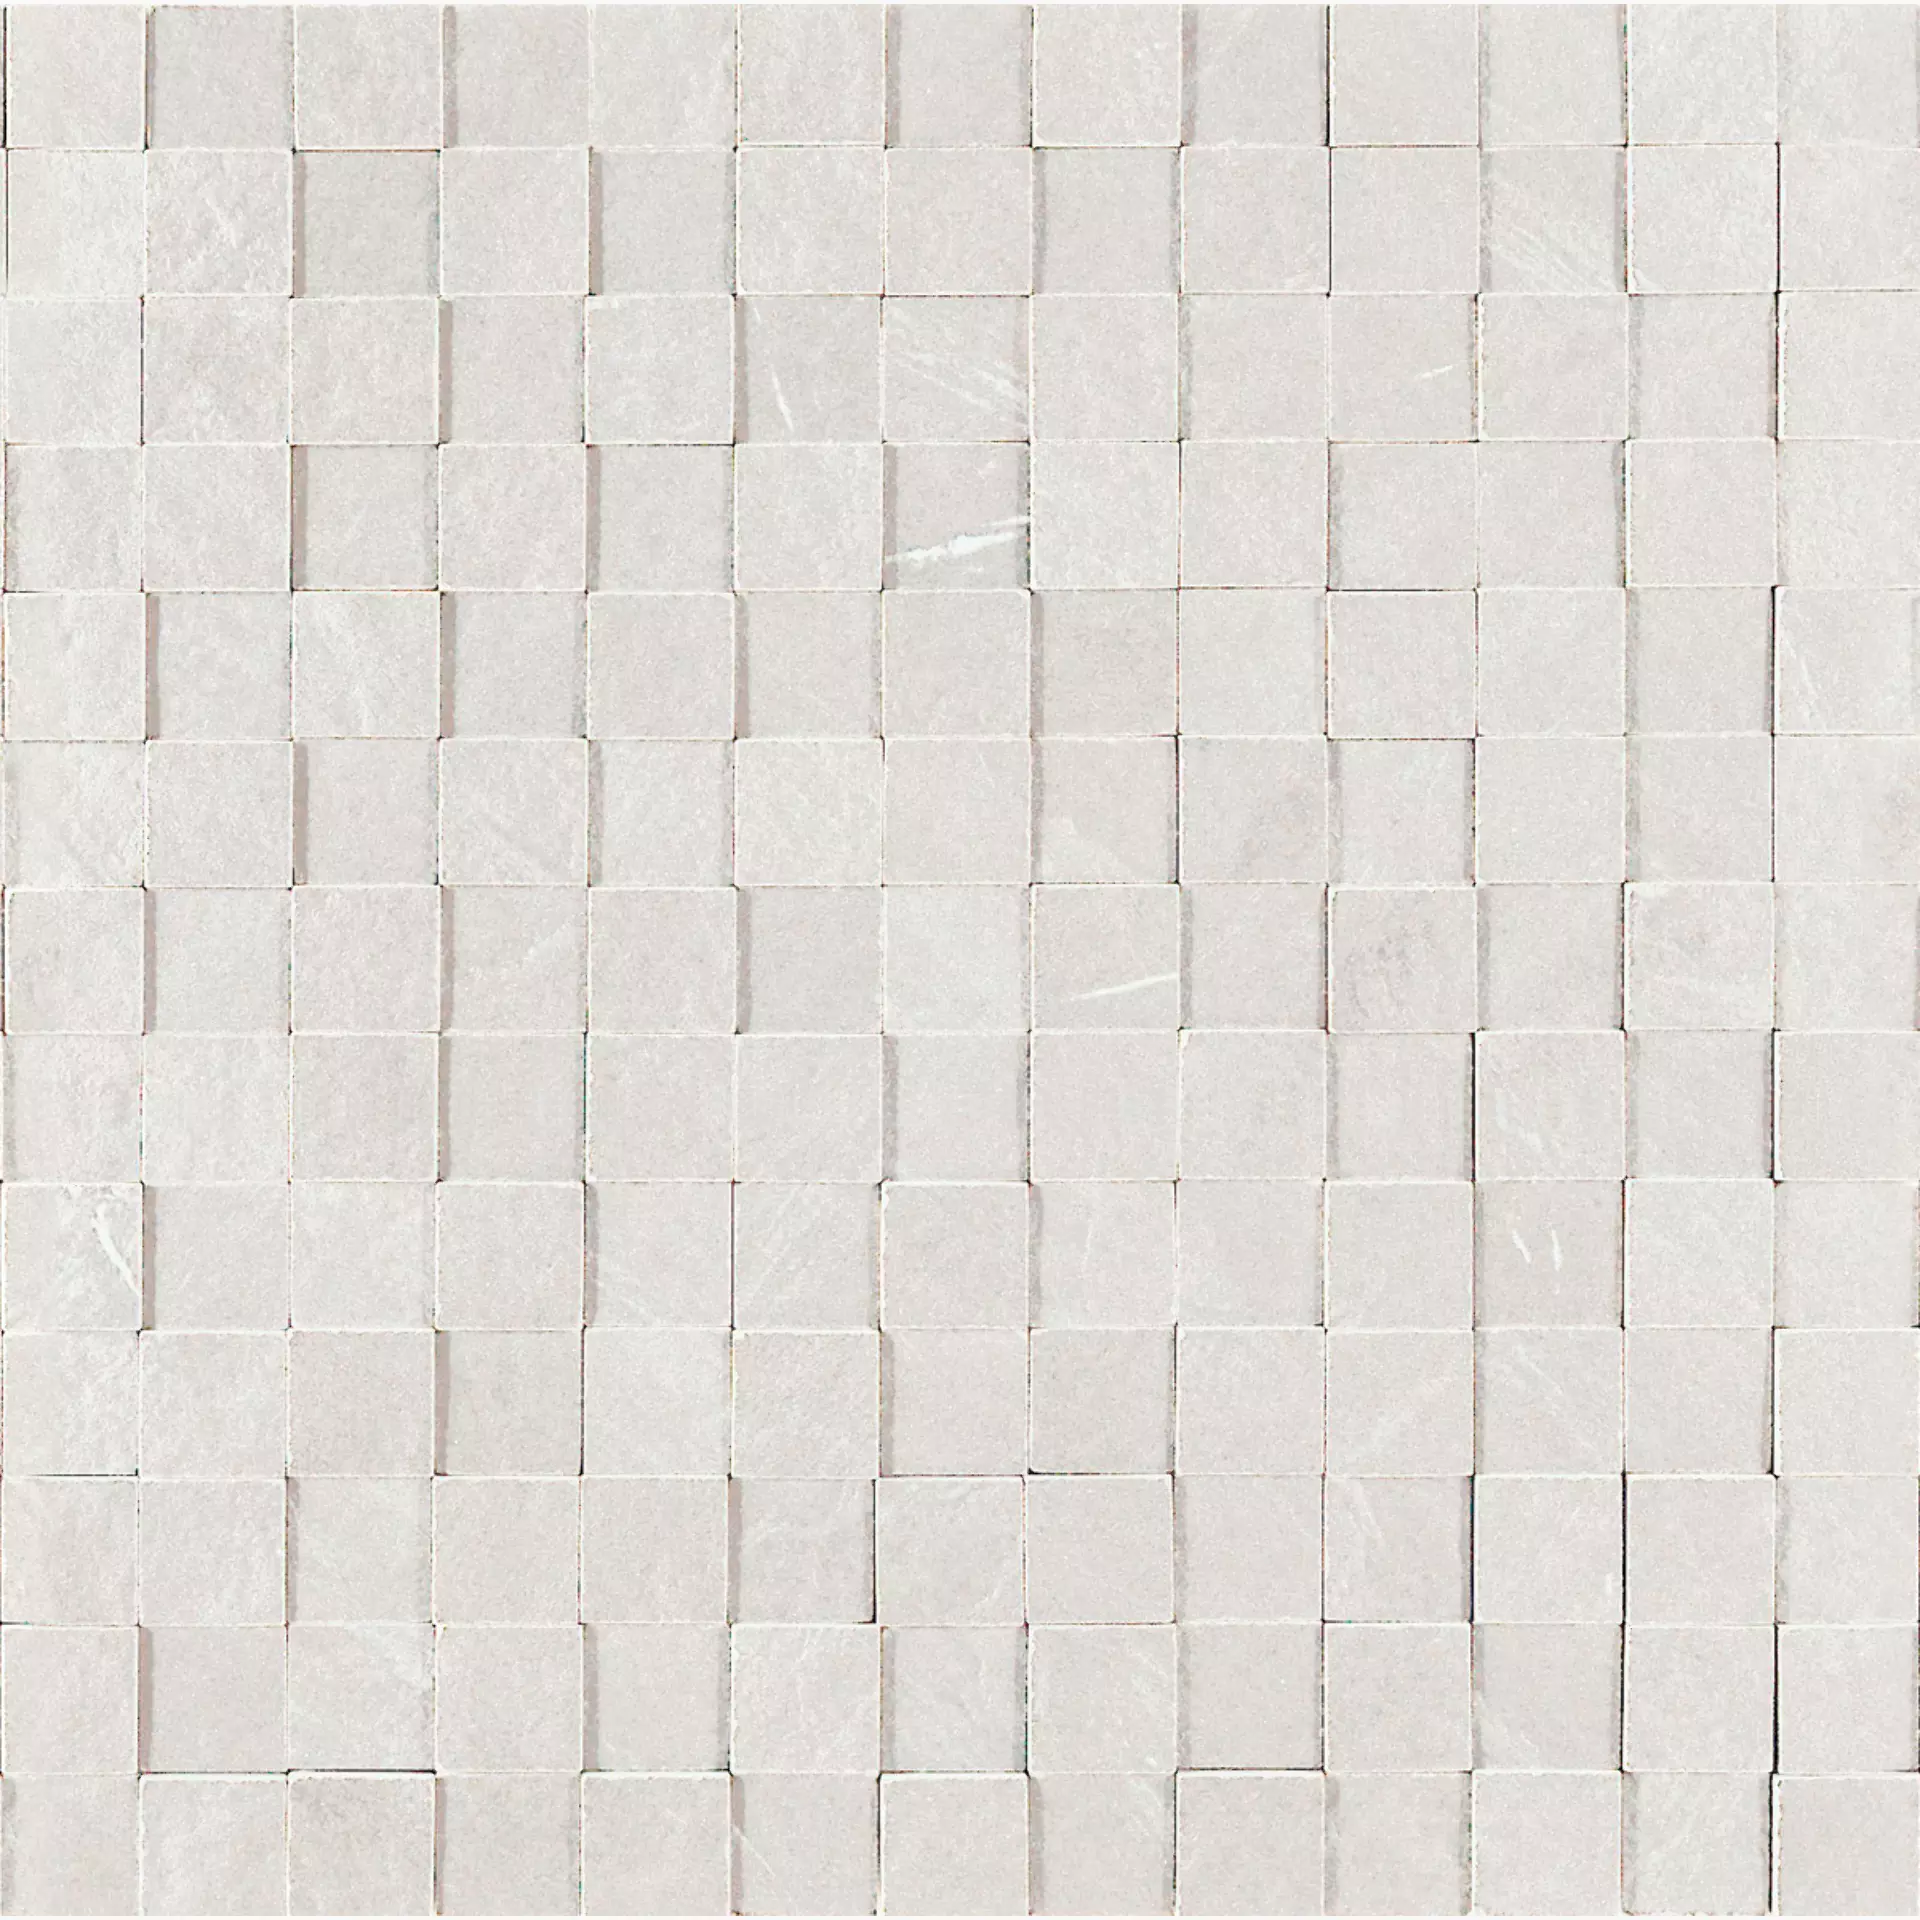 Marazzi Mystone Lavagna Bianco Naturale – Matt Mosaic 3D MD1H 30x30cm 10mm